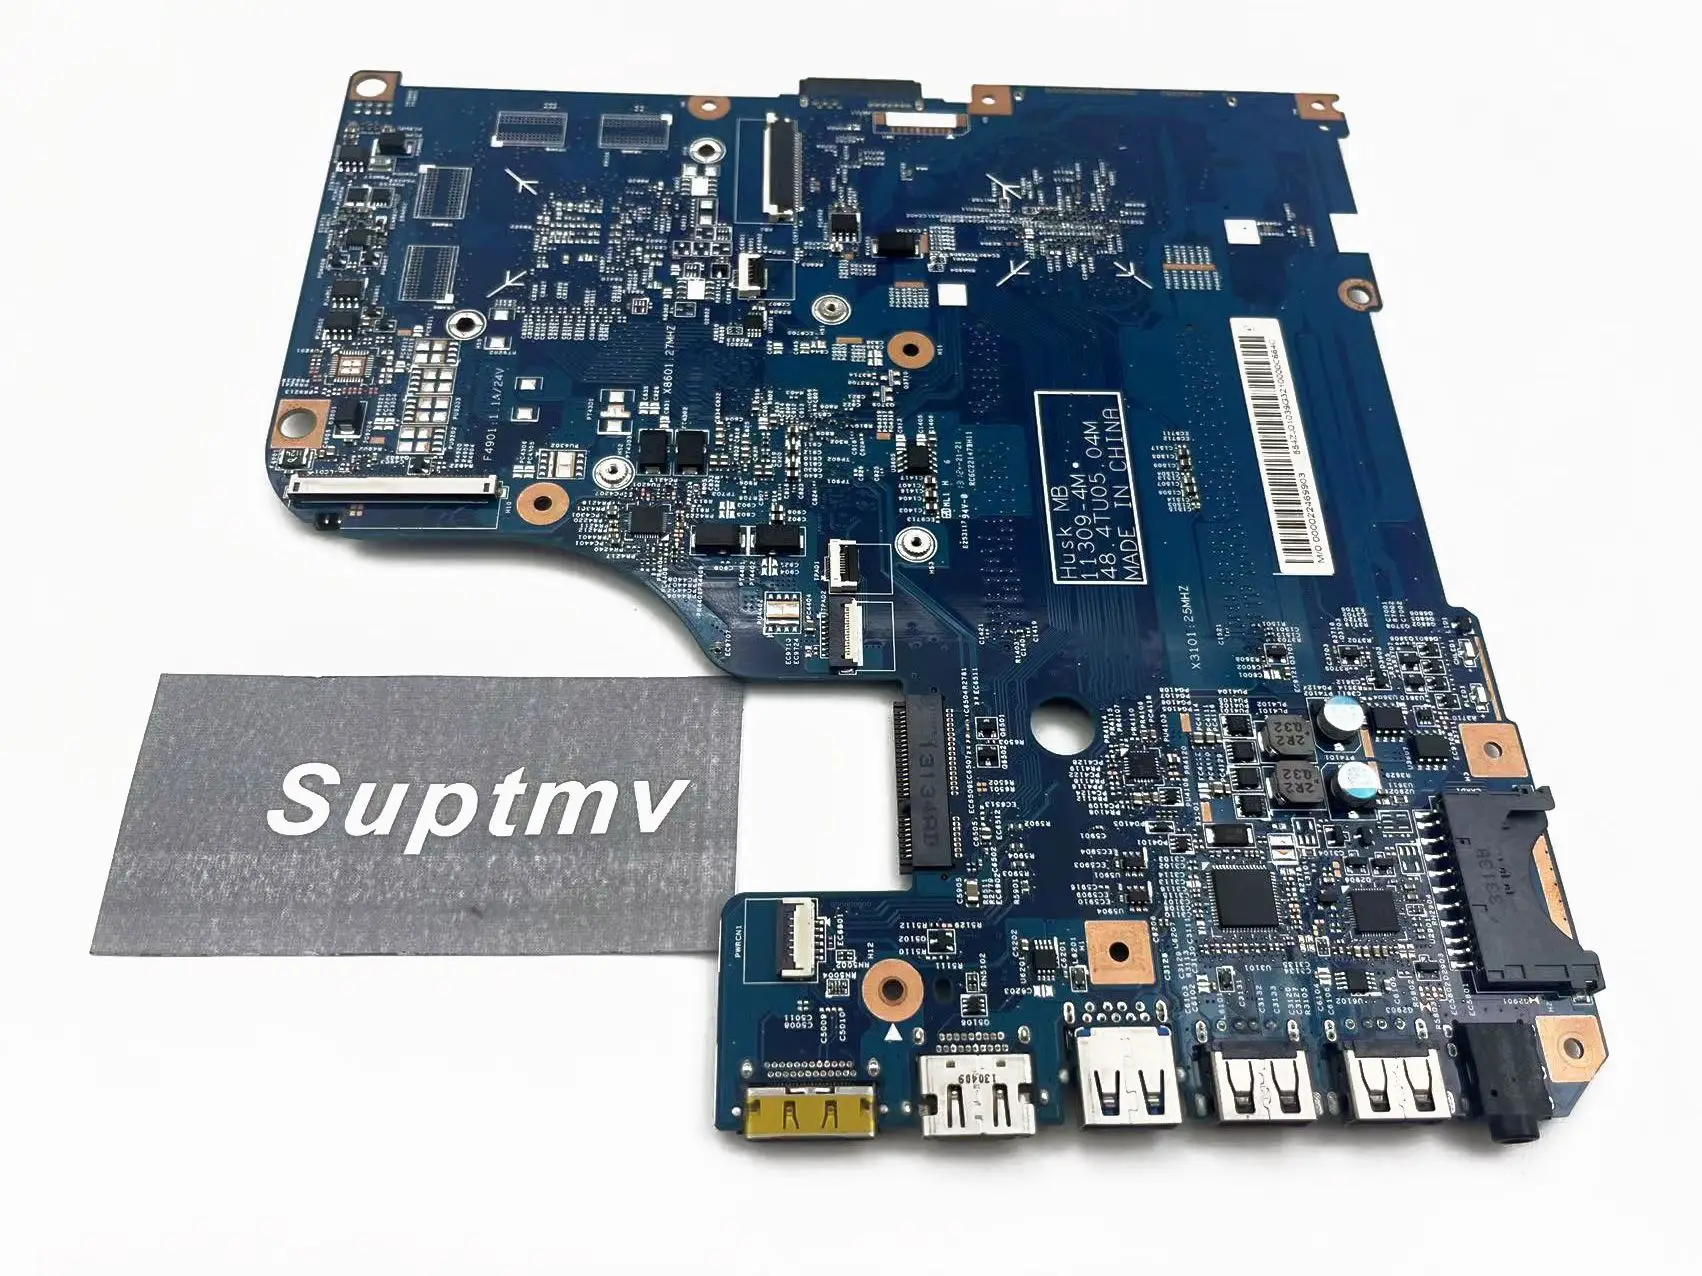 Prenosnik Matično ploščo je Primerna za ACER Aspire V5-471 V5-571 11309-4M DDR3 UMA Test Delo